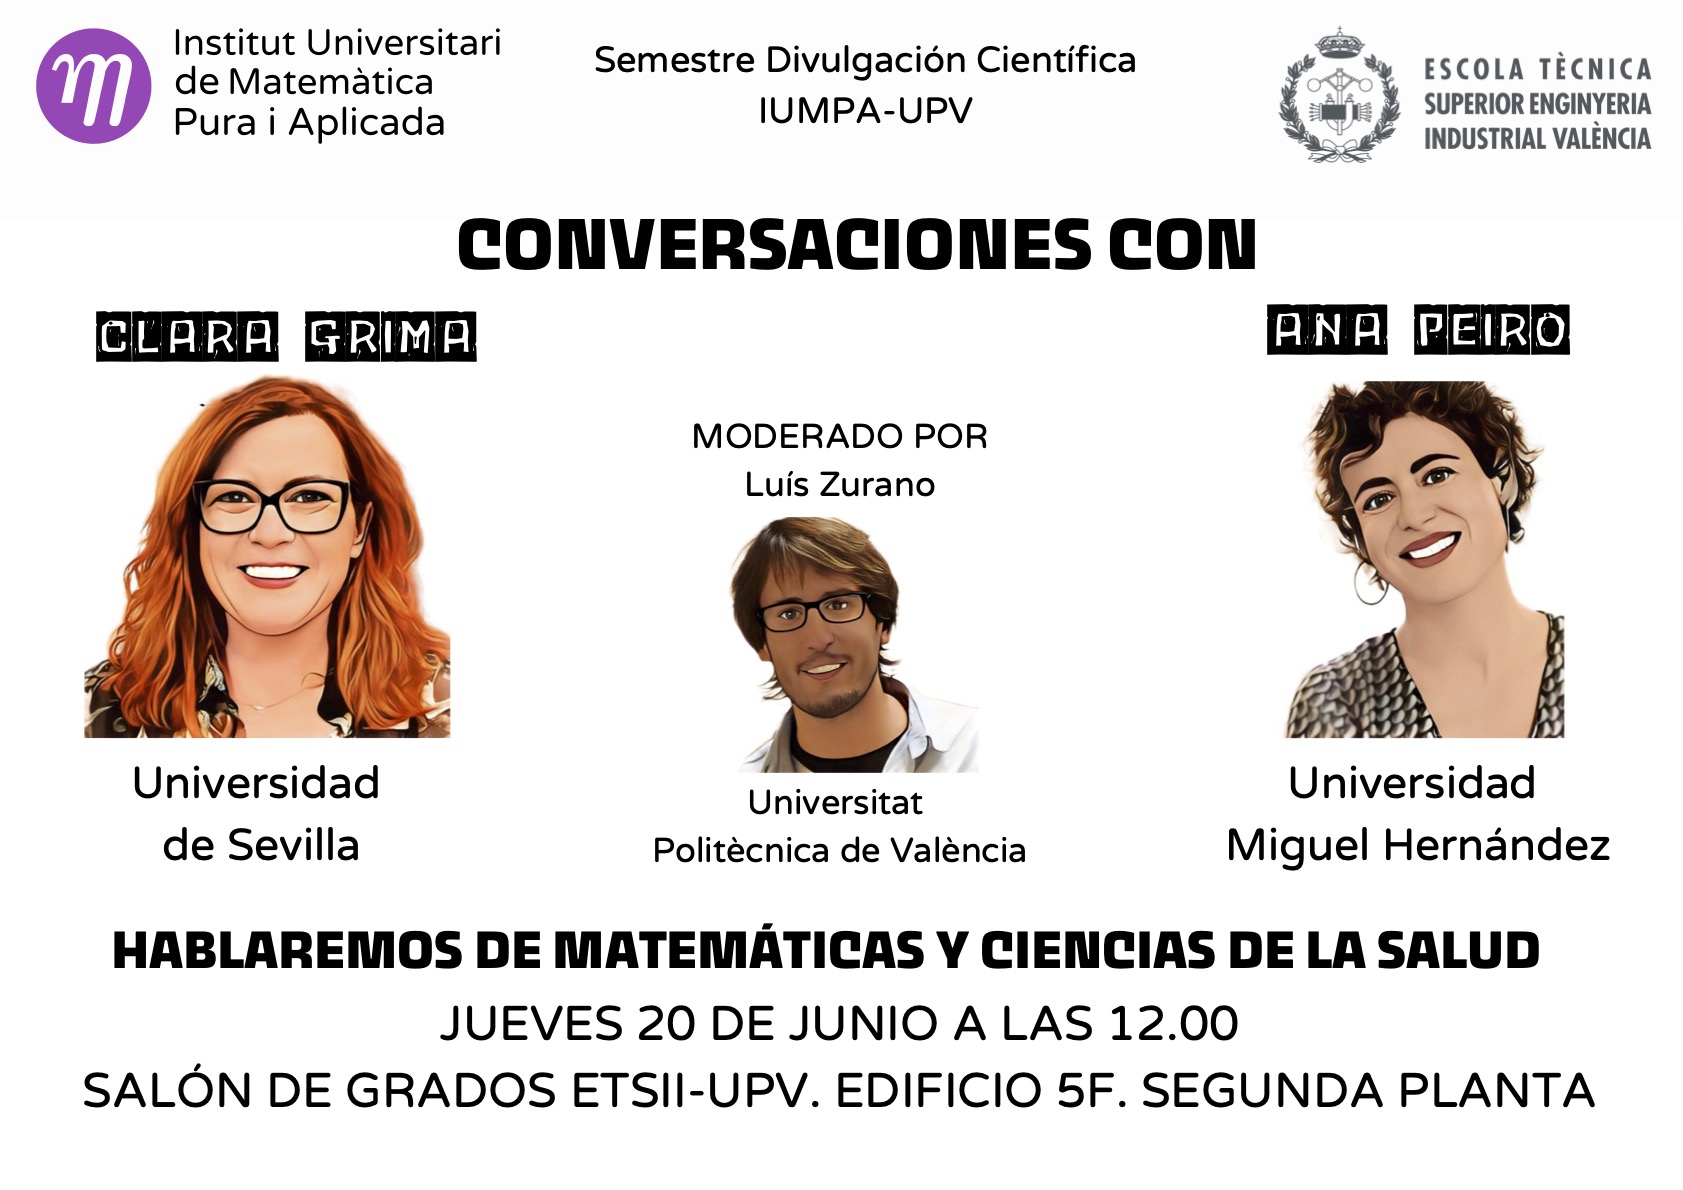 Conversaciones con Clara Grima y Ana Peiró. Jueves 20 de junio a las 12.00 horas en el Salón de Grados de la ETSII-UPV (Edificio 5F, segunda planta).